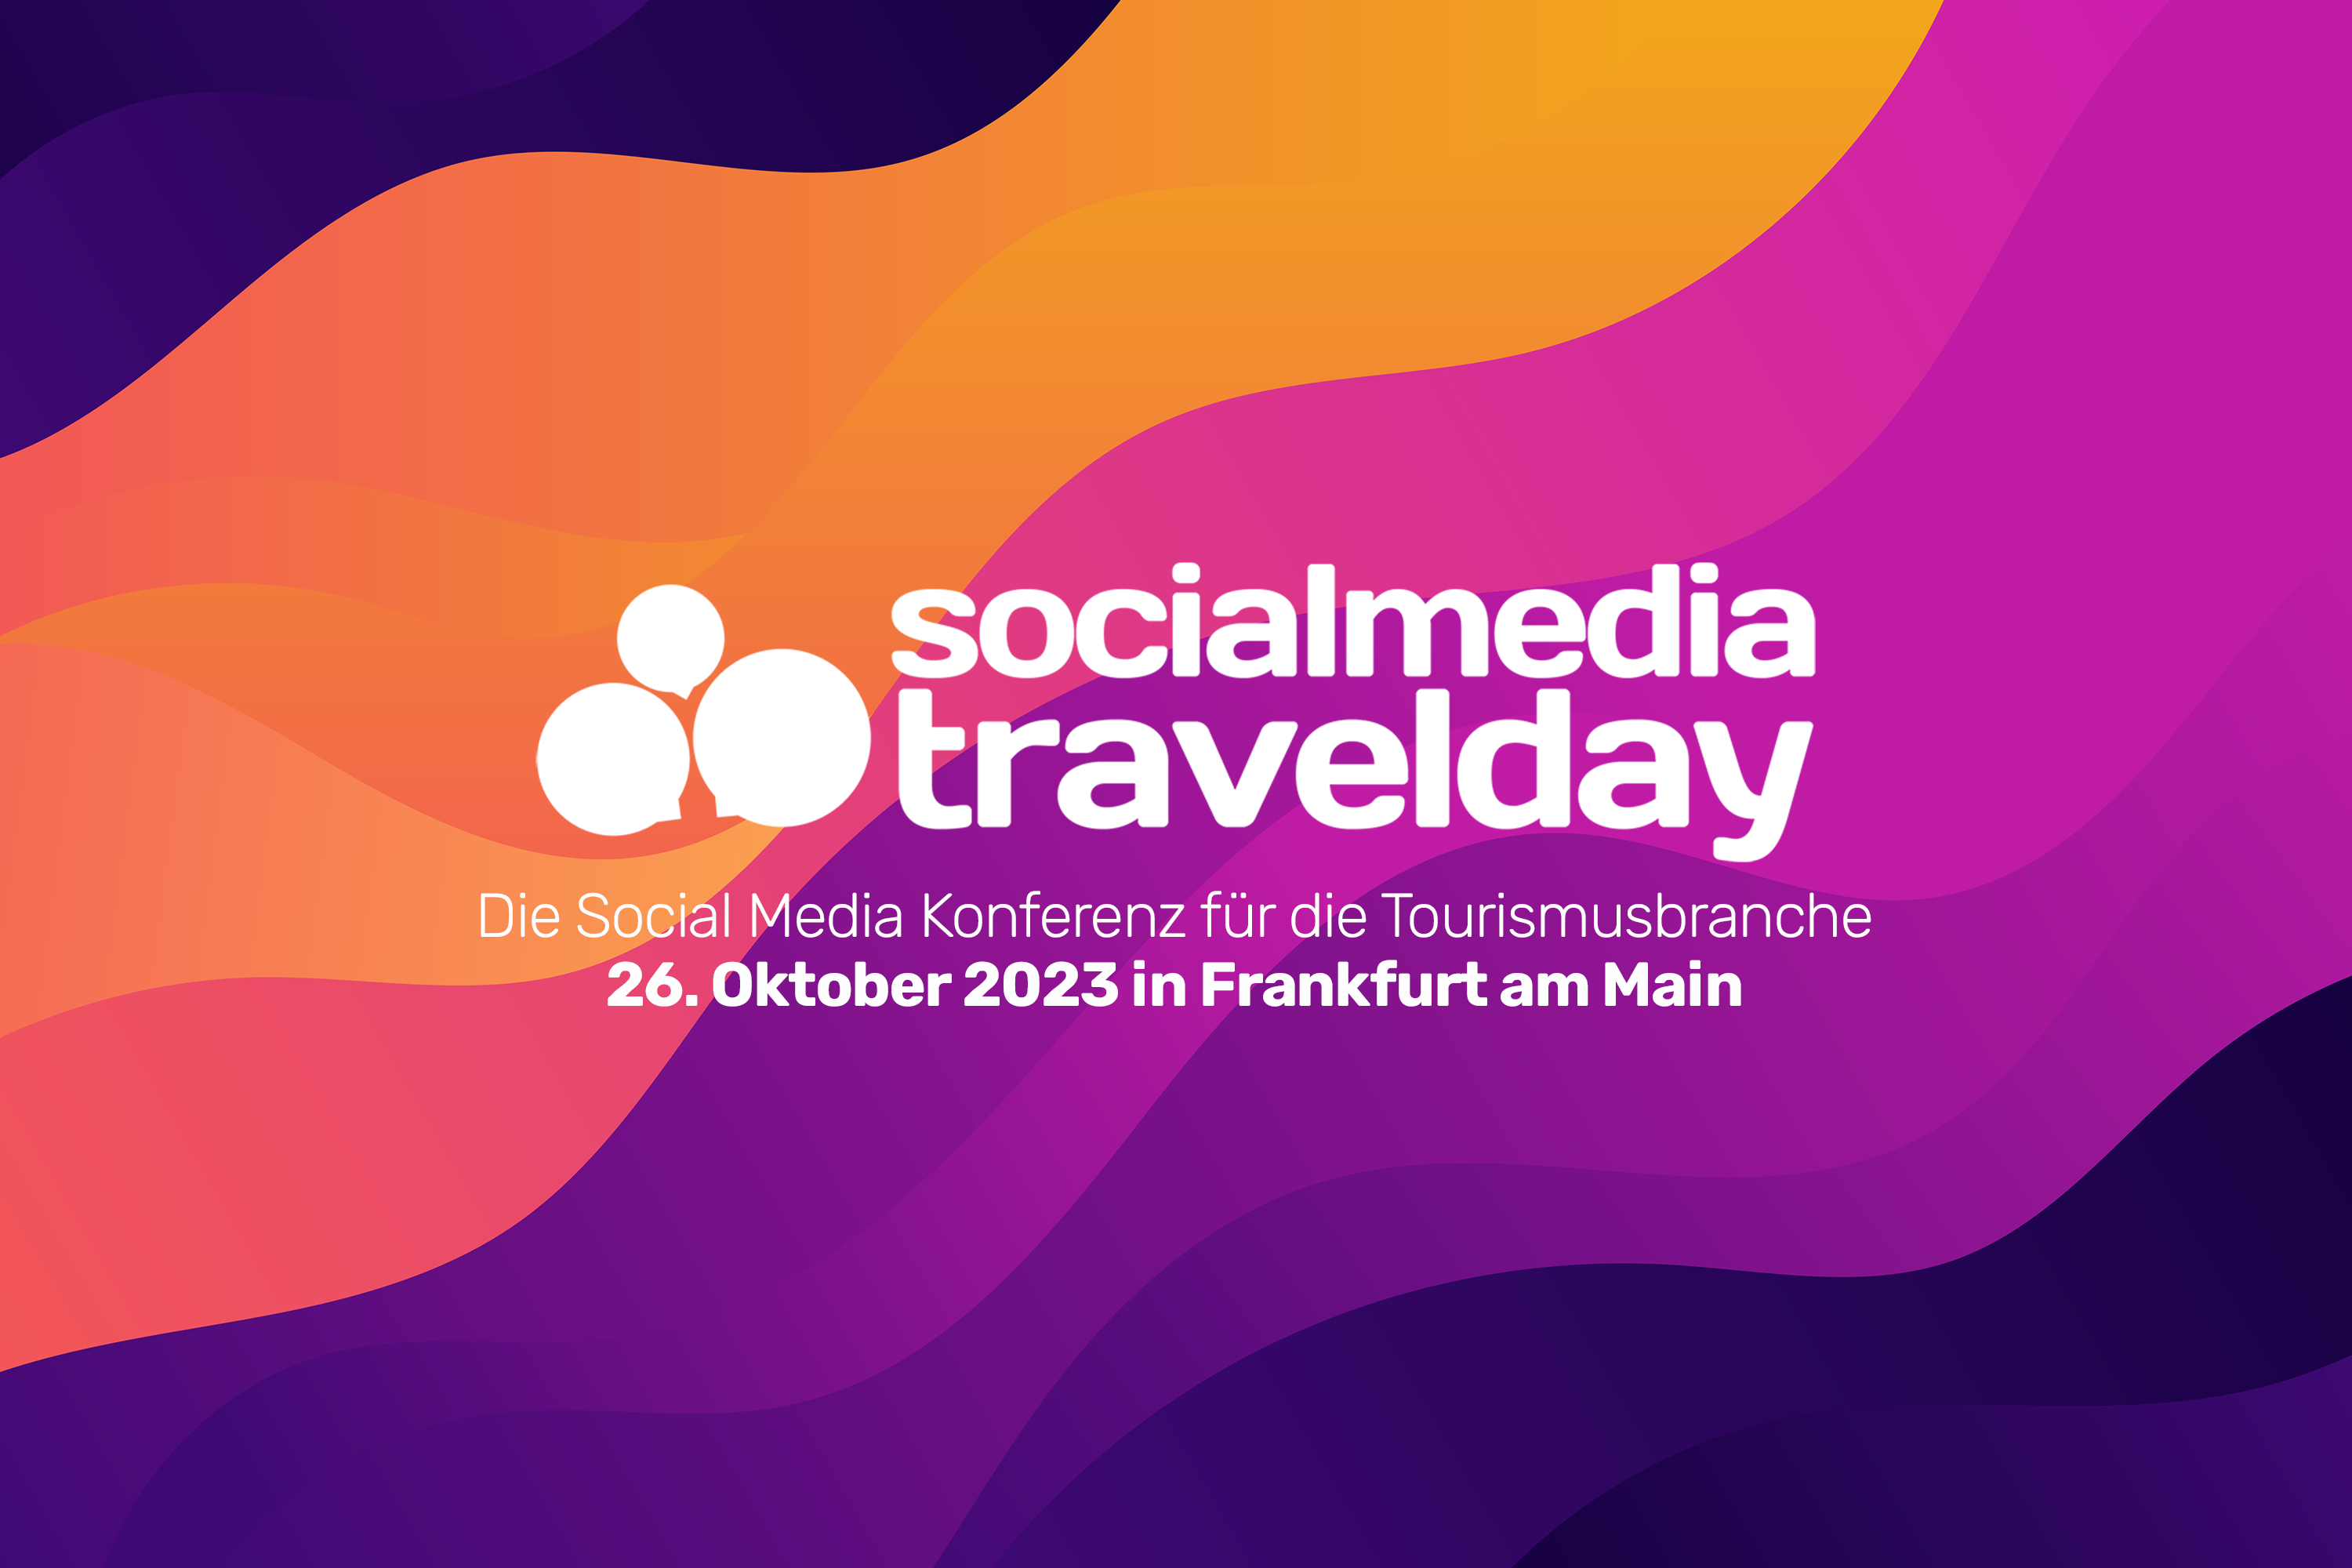 social media travel day am 26. Oktober 2023